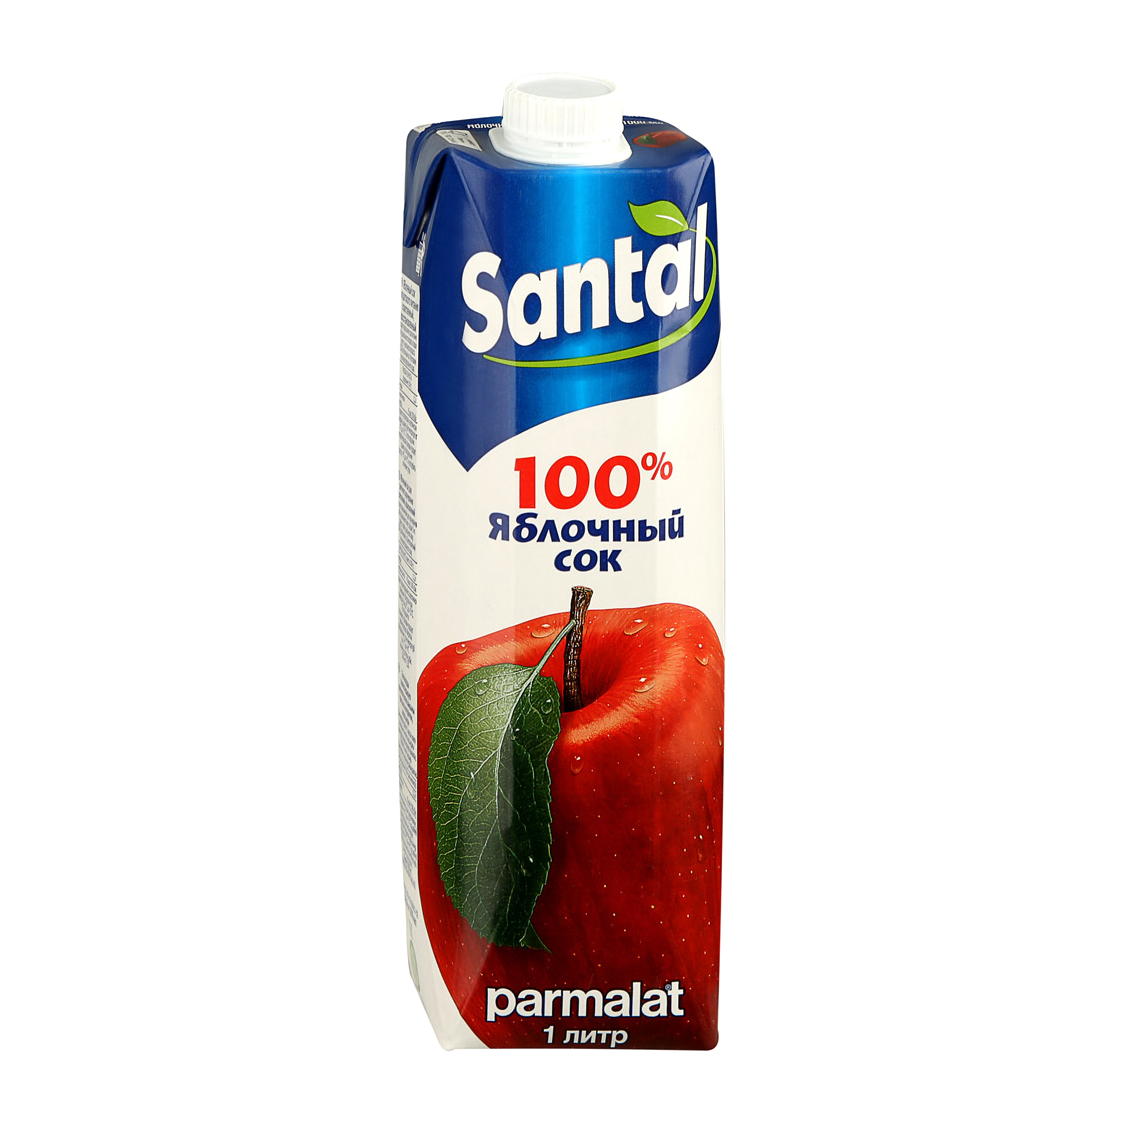 Сок Santal яблочный 100% 1 л сок santal томатный 1 л